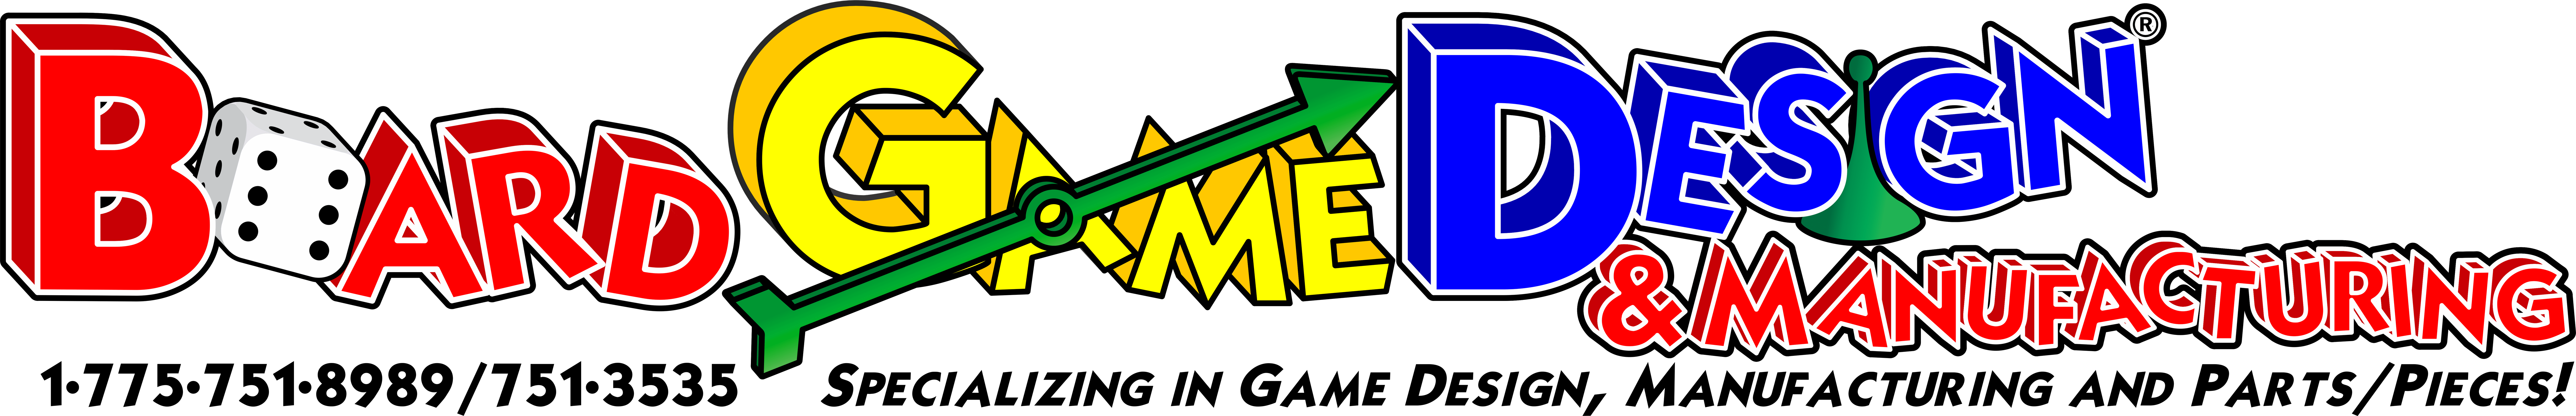 Game Board Design